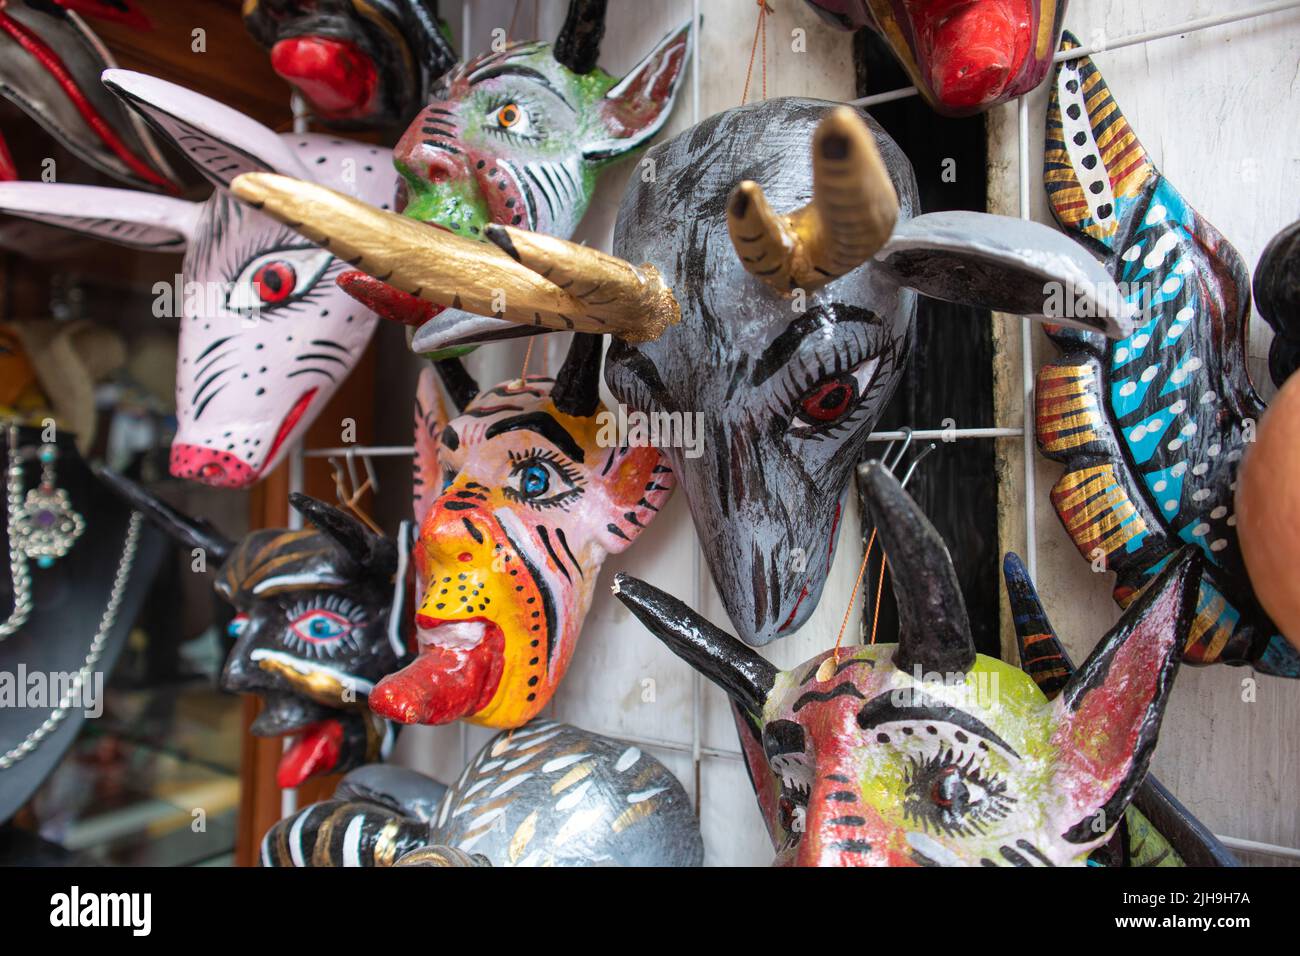 Ornement traditionnel de masques mexicains, anges et démons poterie de masques de carnaval colorés dans un marché de la ville de Puebla, au Mexique Banque D'Images